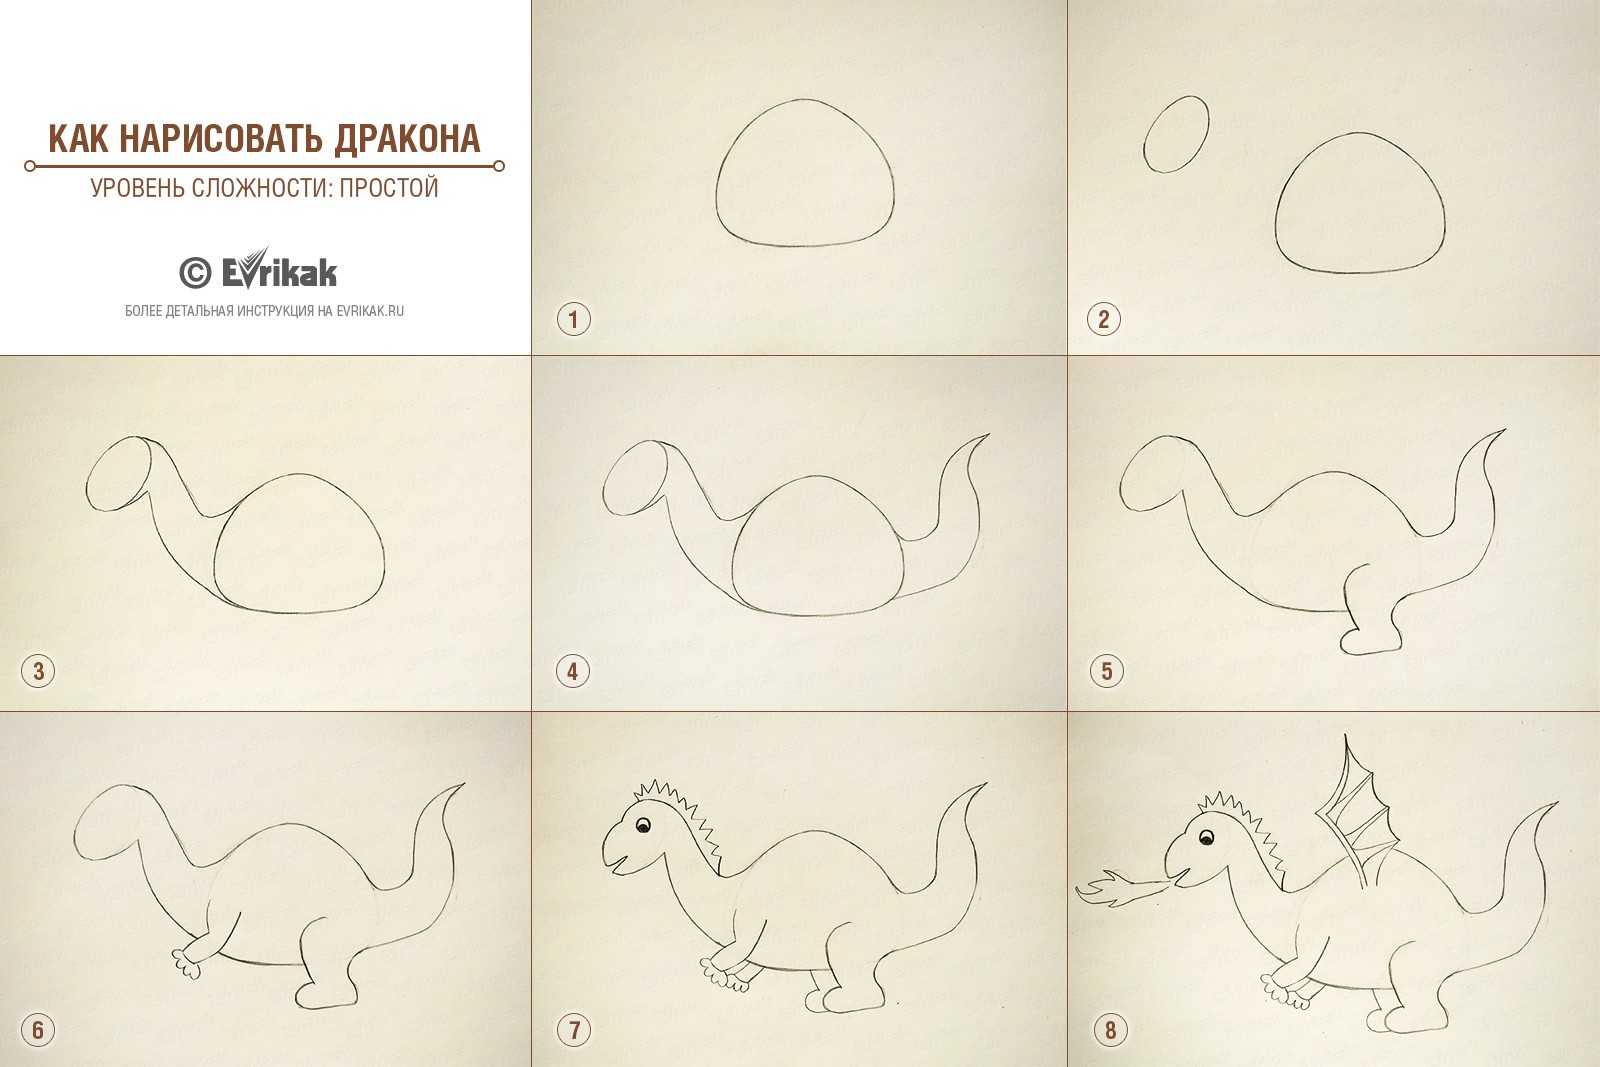 Носорог рисунок карандашом для детей. как нарисовать носорога карандашом поэтапно? прикольные и смешные носороги